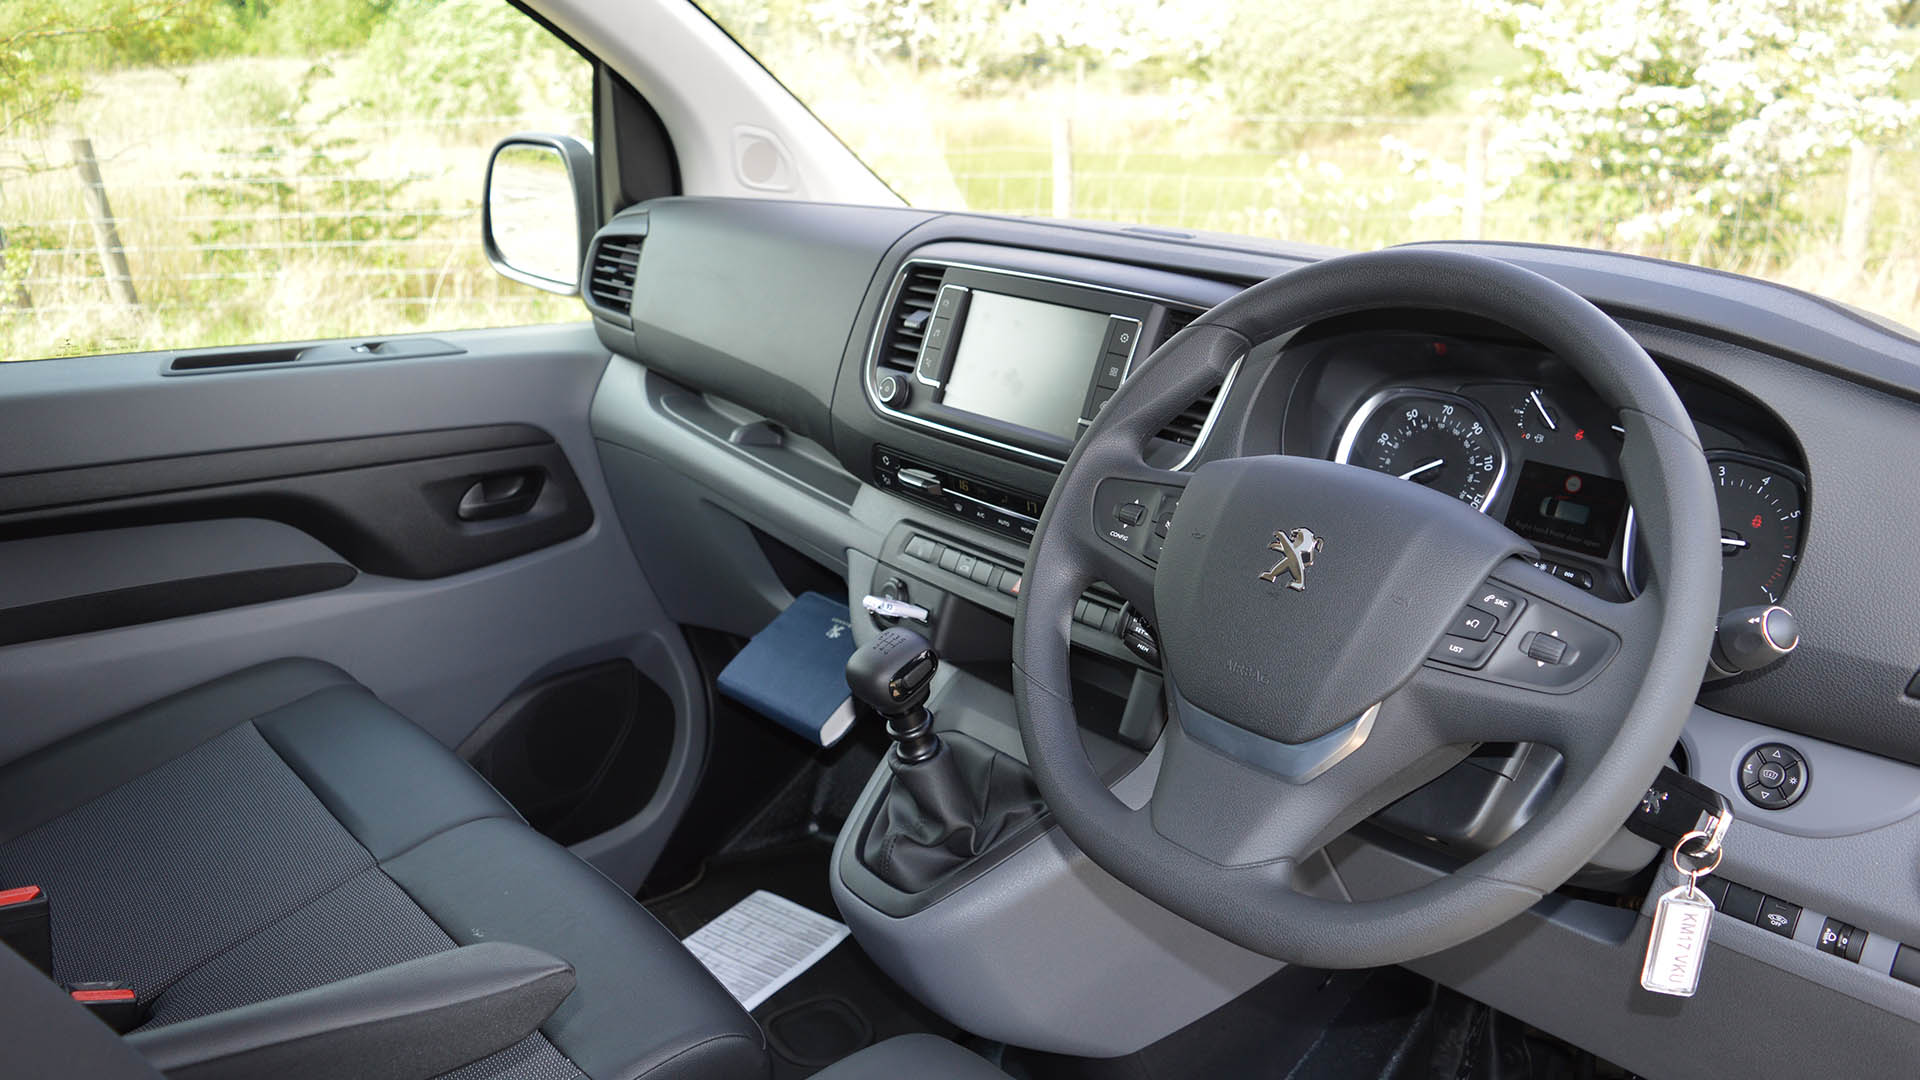 Peugeot Expert panel van (2016 - ) review | AutoTrader